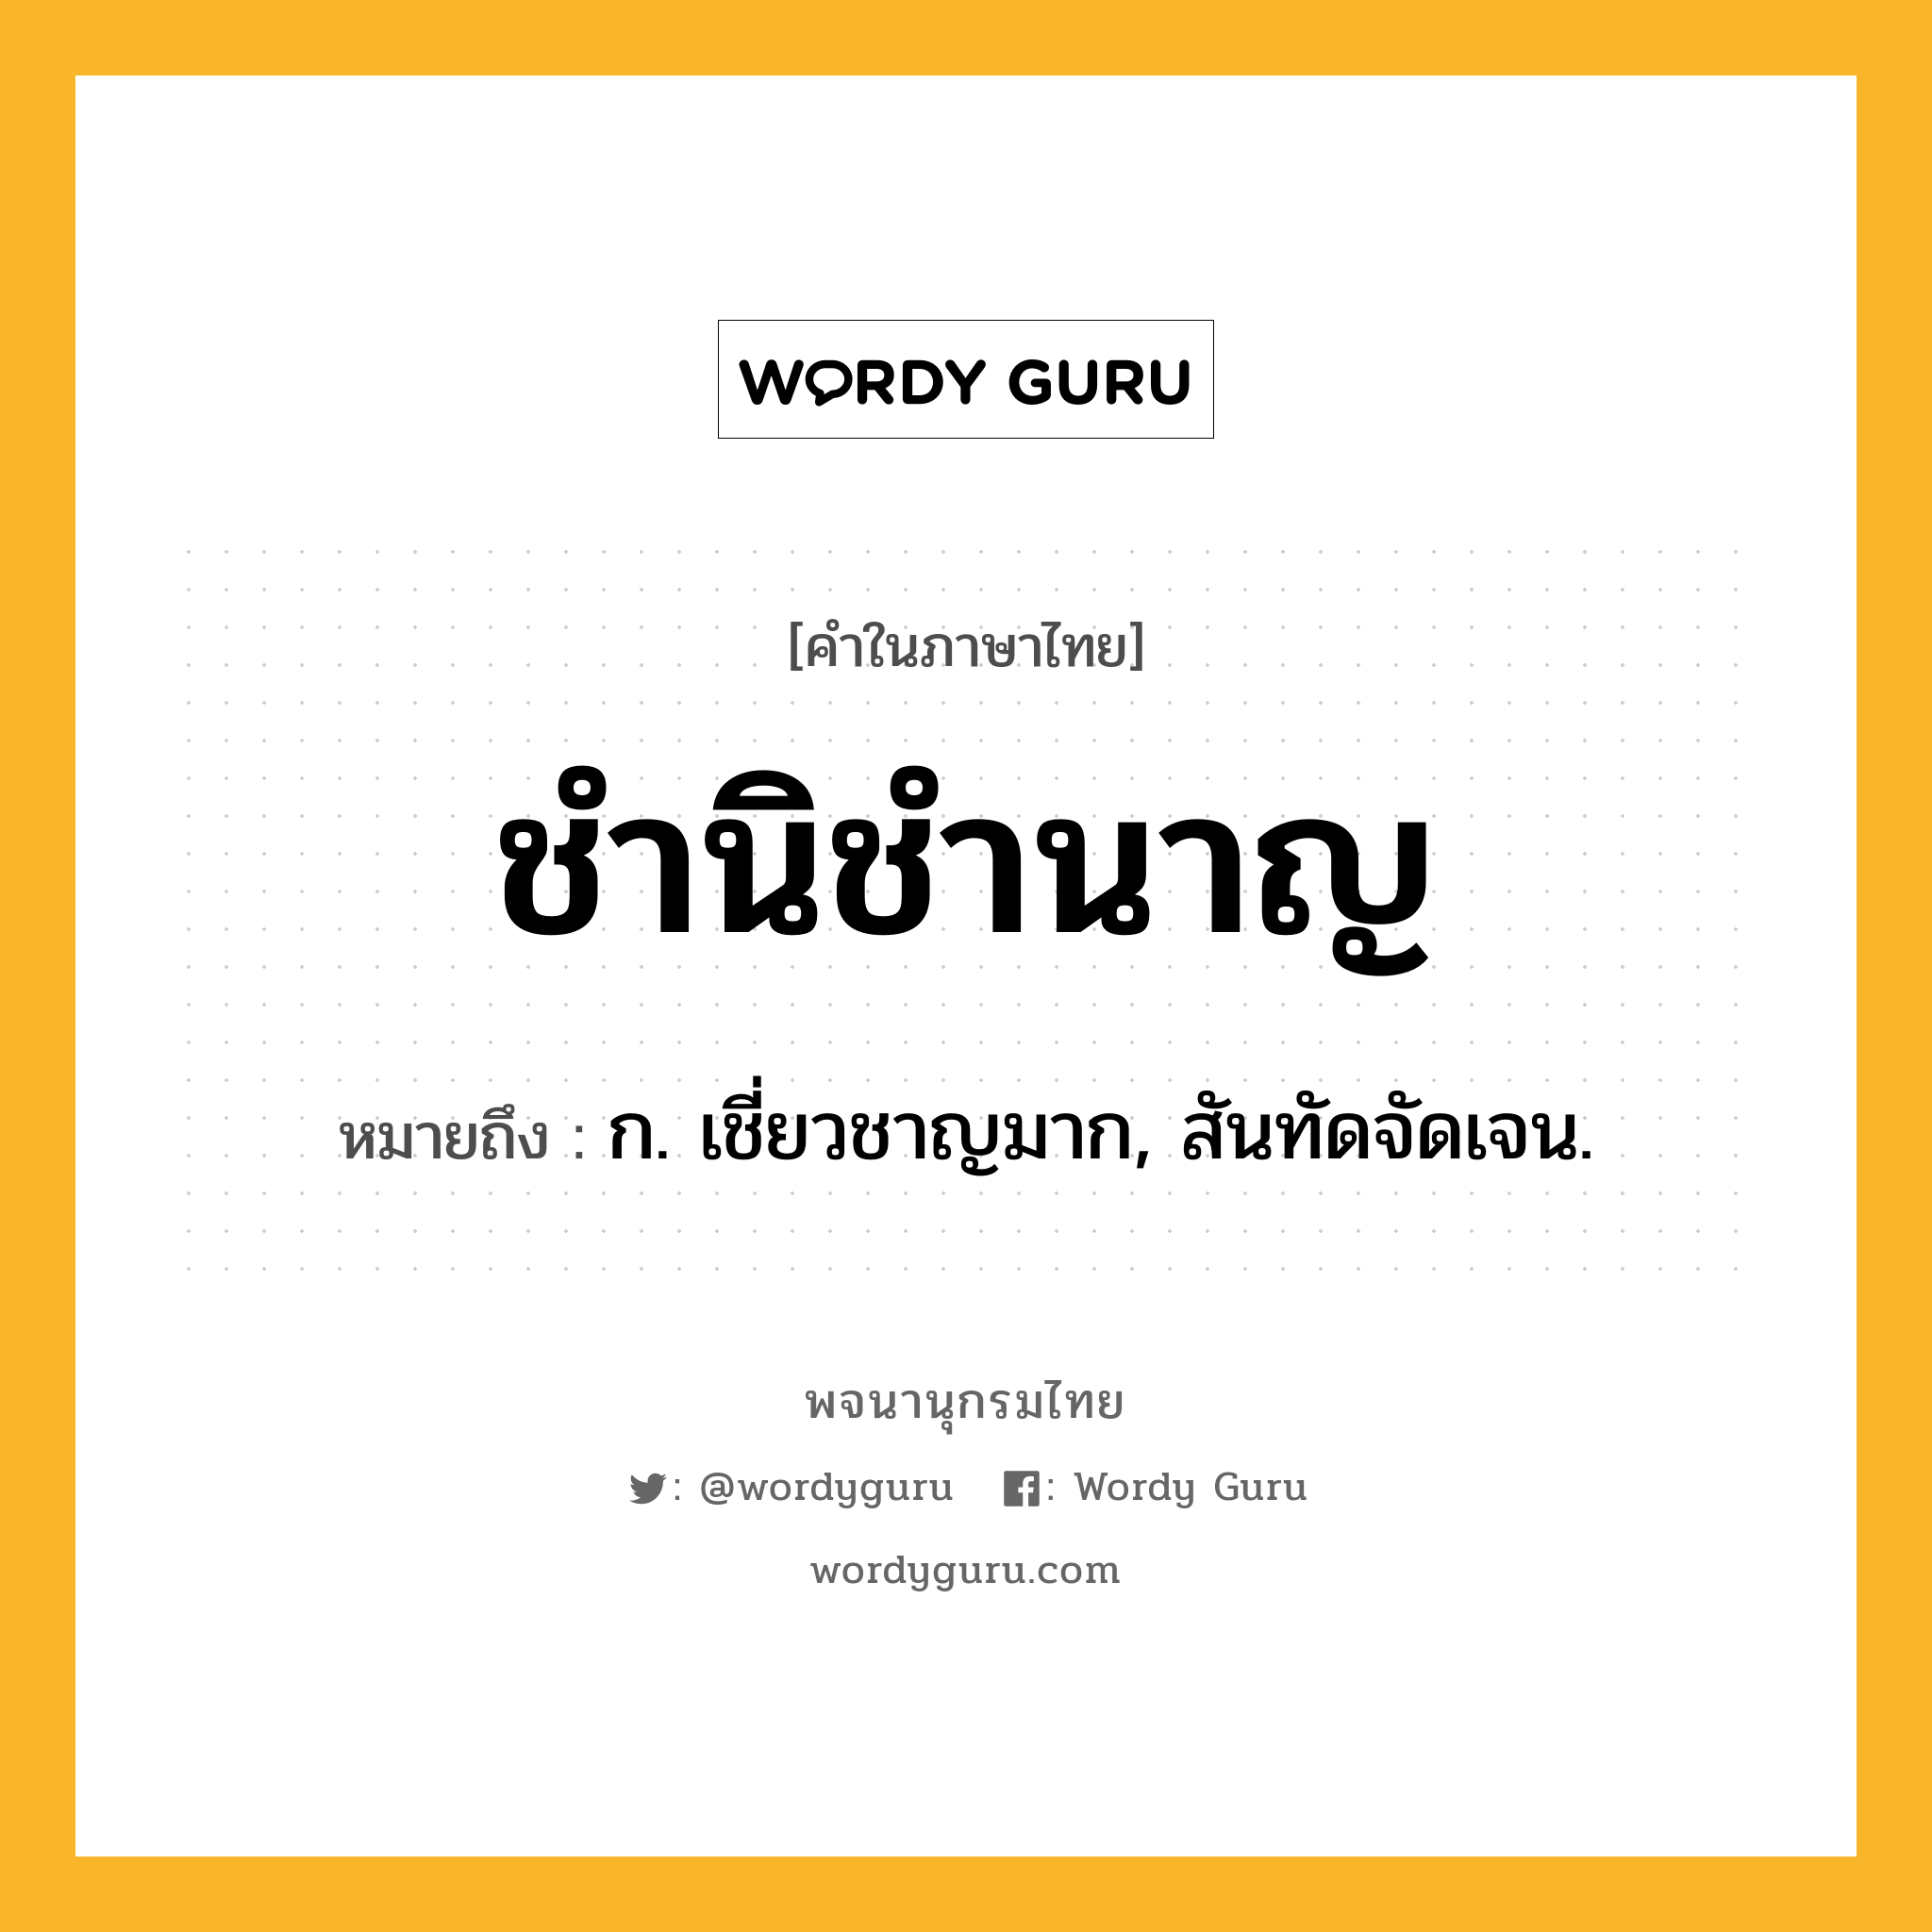 ชำนิชำนาญ ความหมาย หมายถึงอะไร?, คำในภาษาไทย ชำนิชำนาญ หมายถึง ก. เชี่ยวชาญมาก, สันทัดจัดเจน.